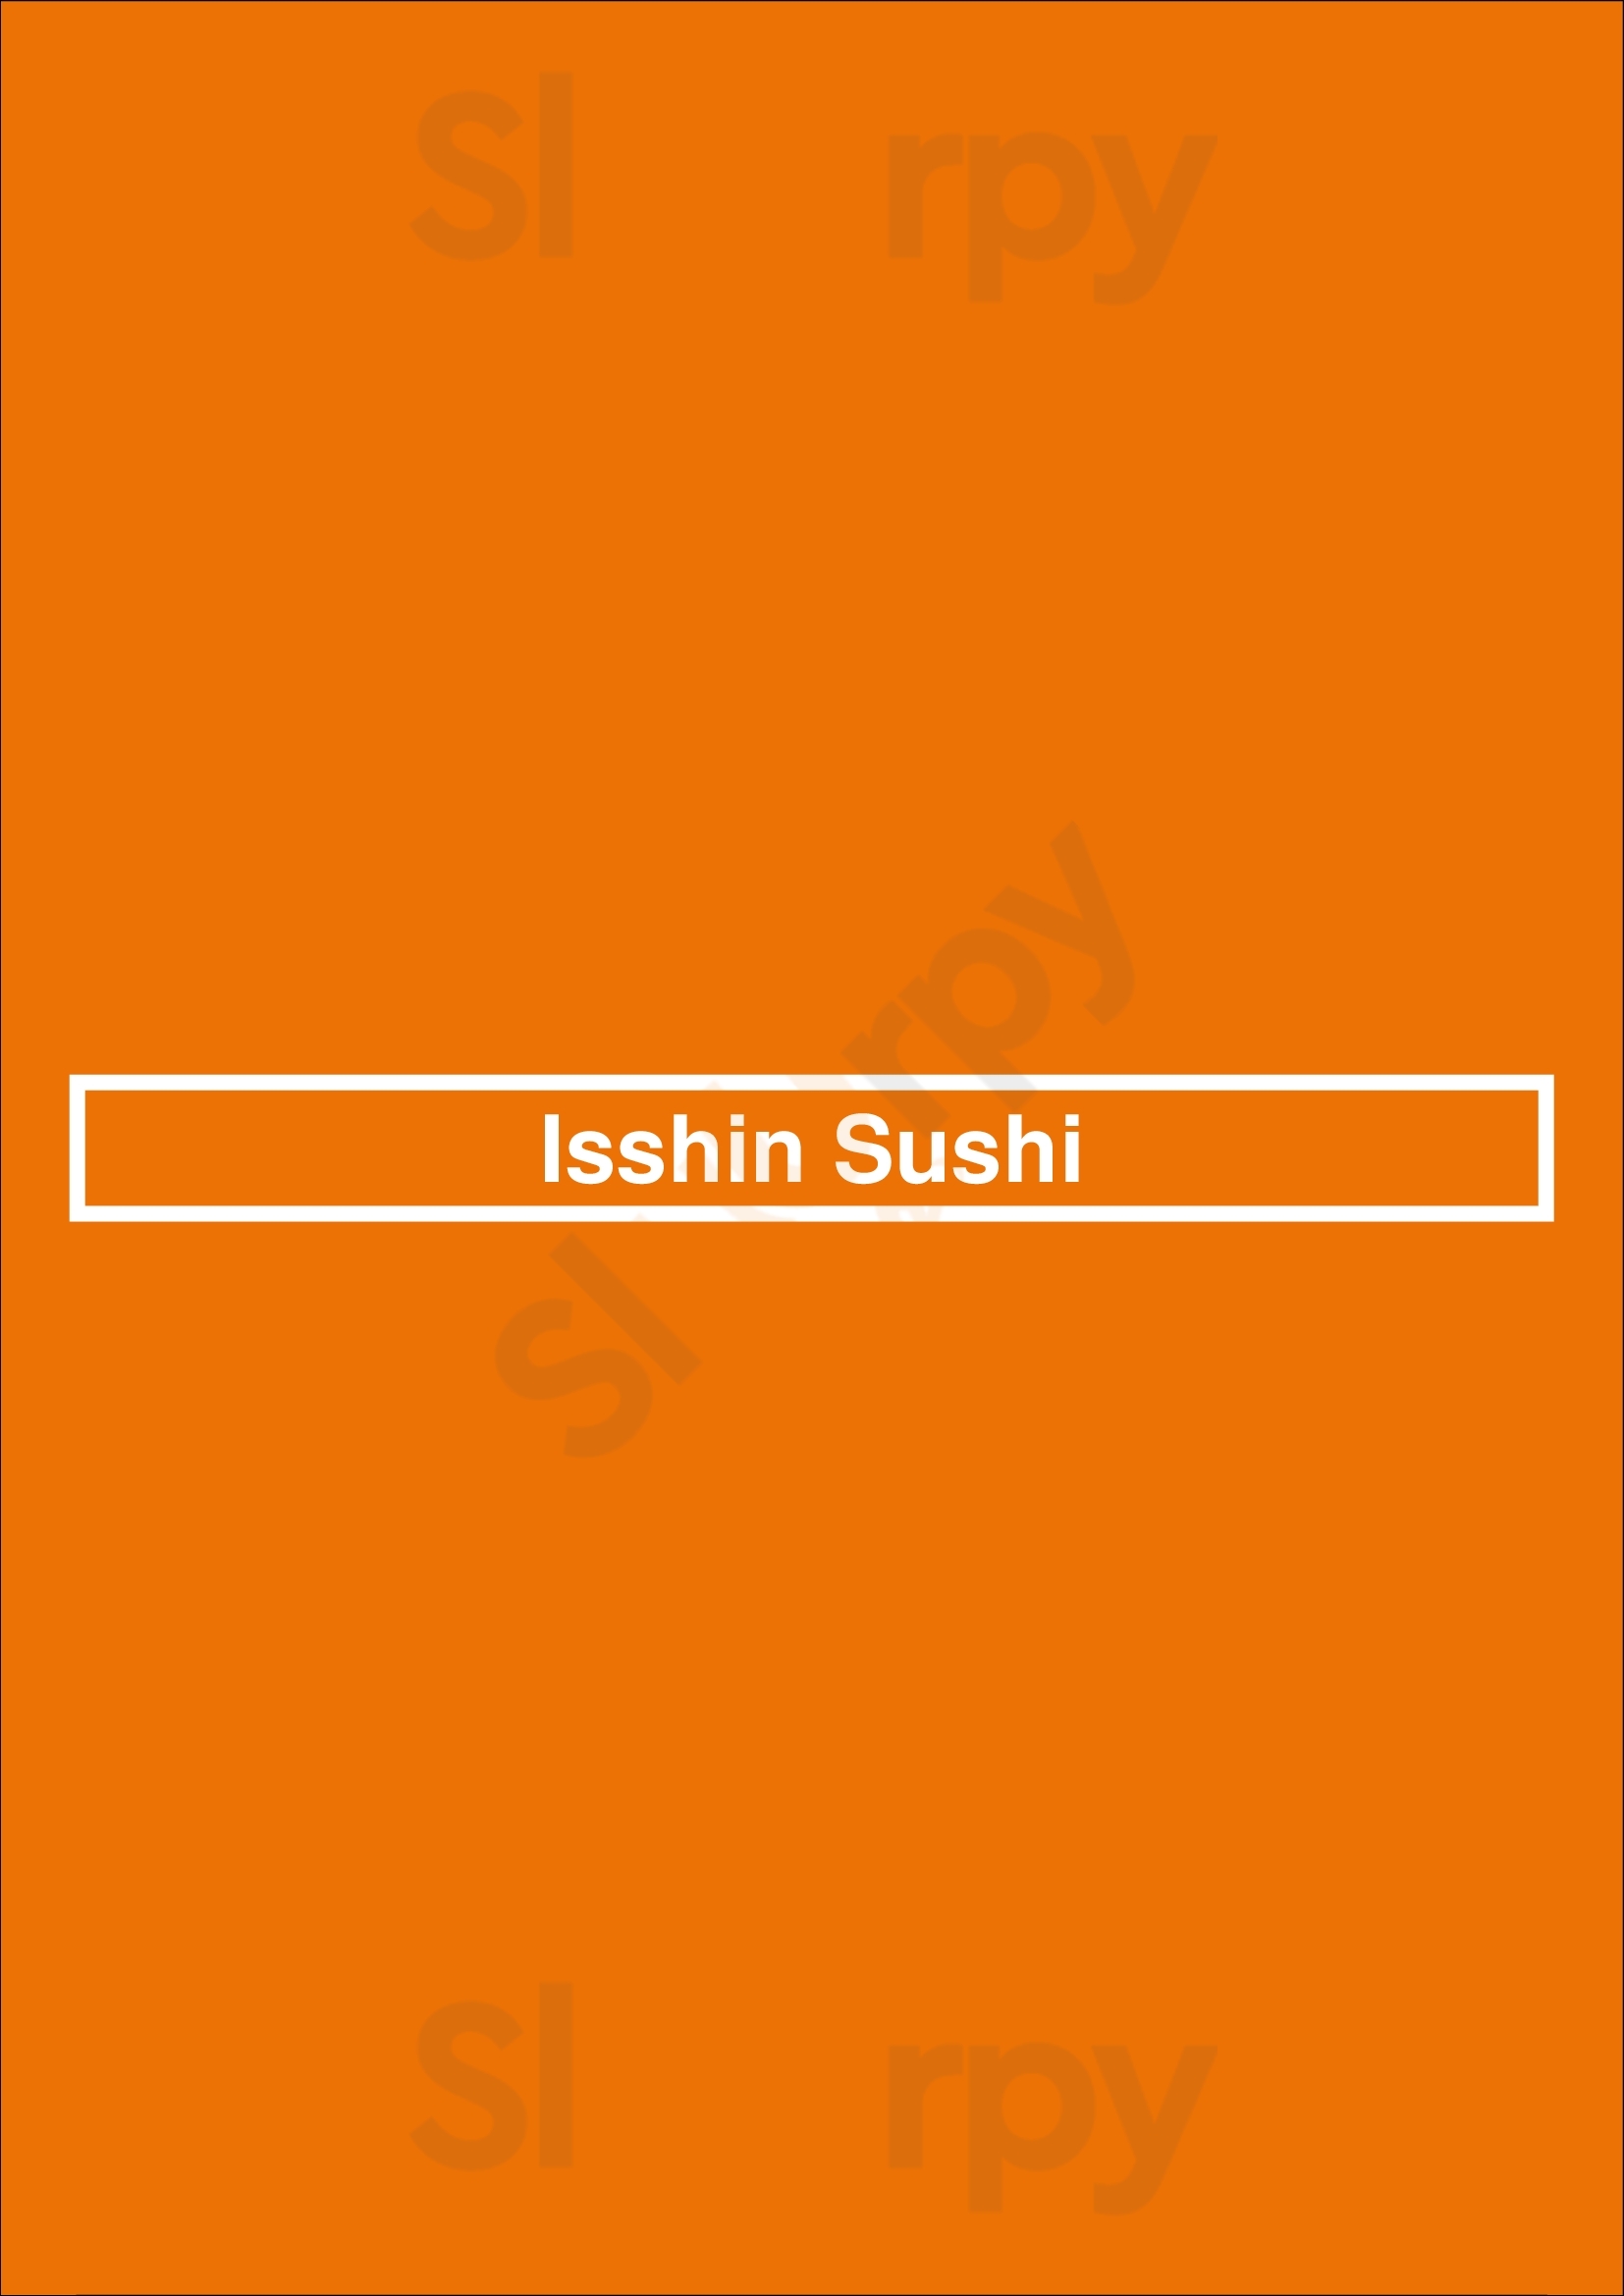 Isshin Sushi Surrey Menu - 1